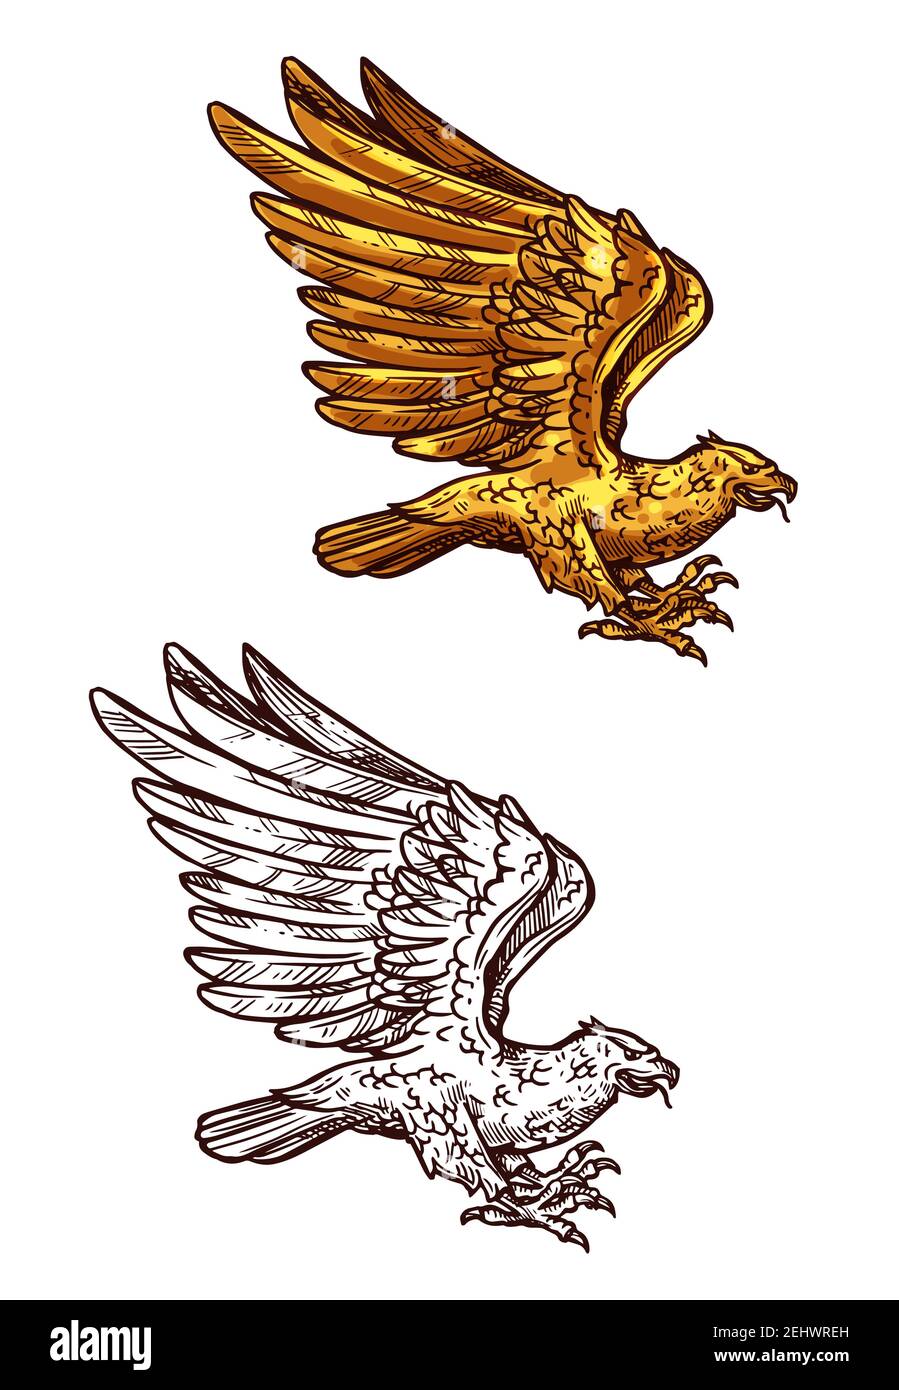 EAGLE, falcon, faucon ou phoenix esquisse d'oiseau doré volant avec des ailes surélevées. Emblème de chasse à la fauconnerie, élément heralsec royal d'époque ou vecteur de tatouage Illustration de Vecteur